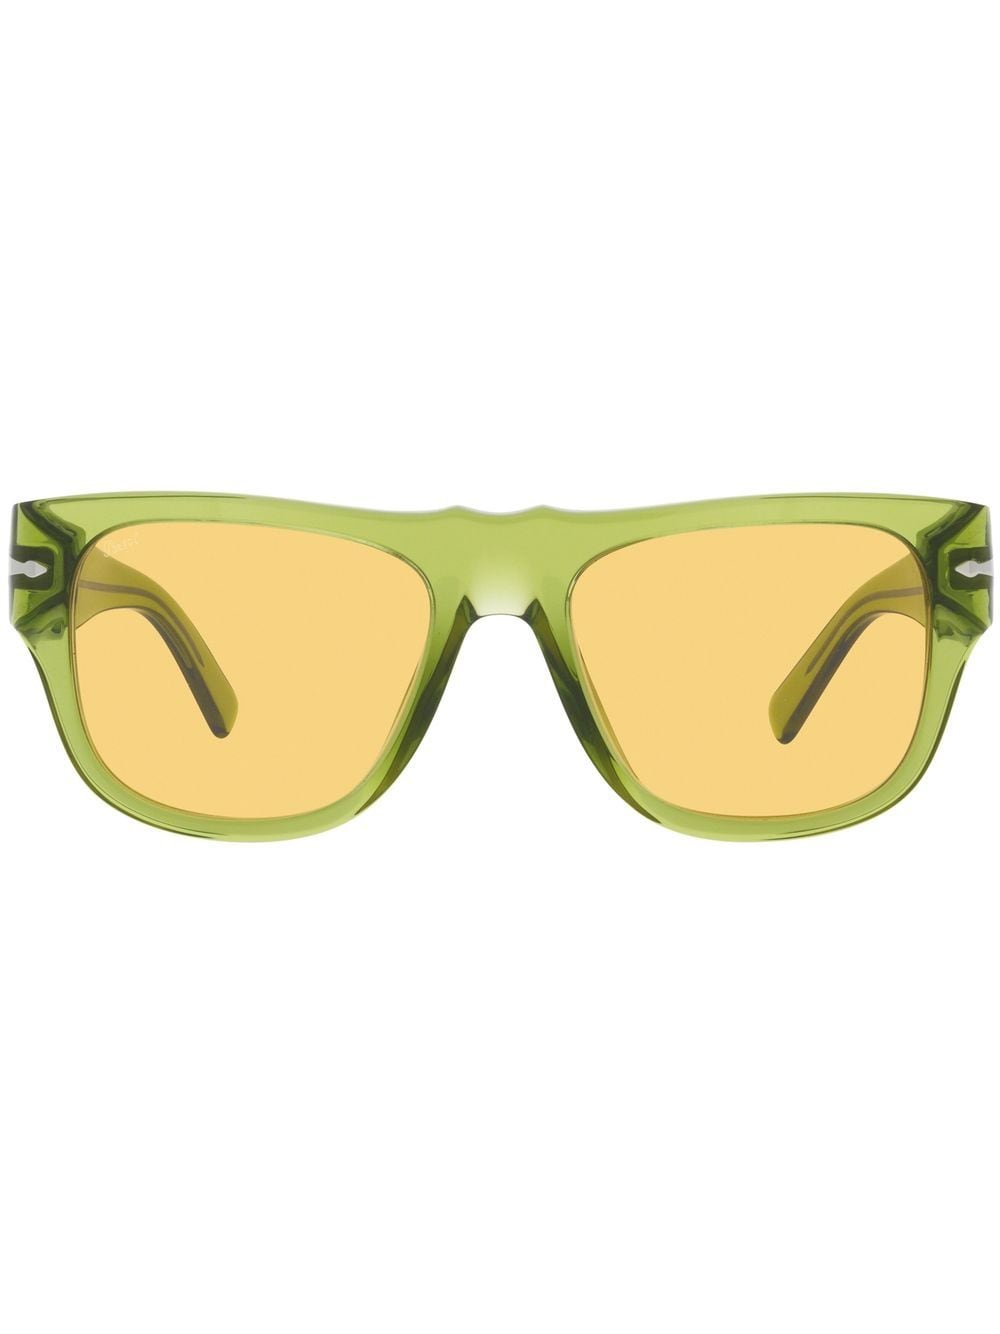 Persol Sonnenbrille mit eckigem Gestell - Grün von Persol